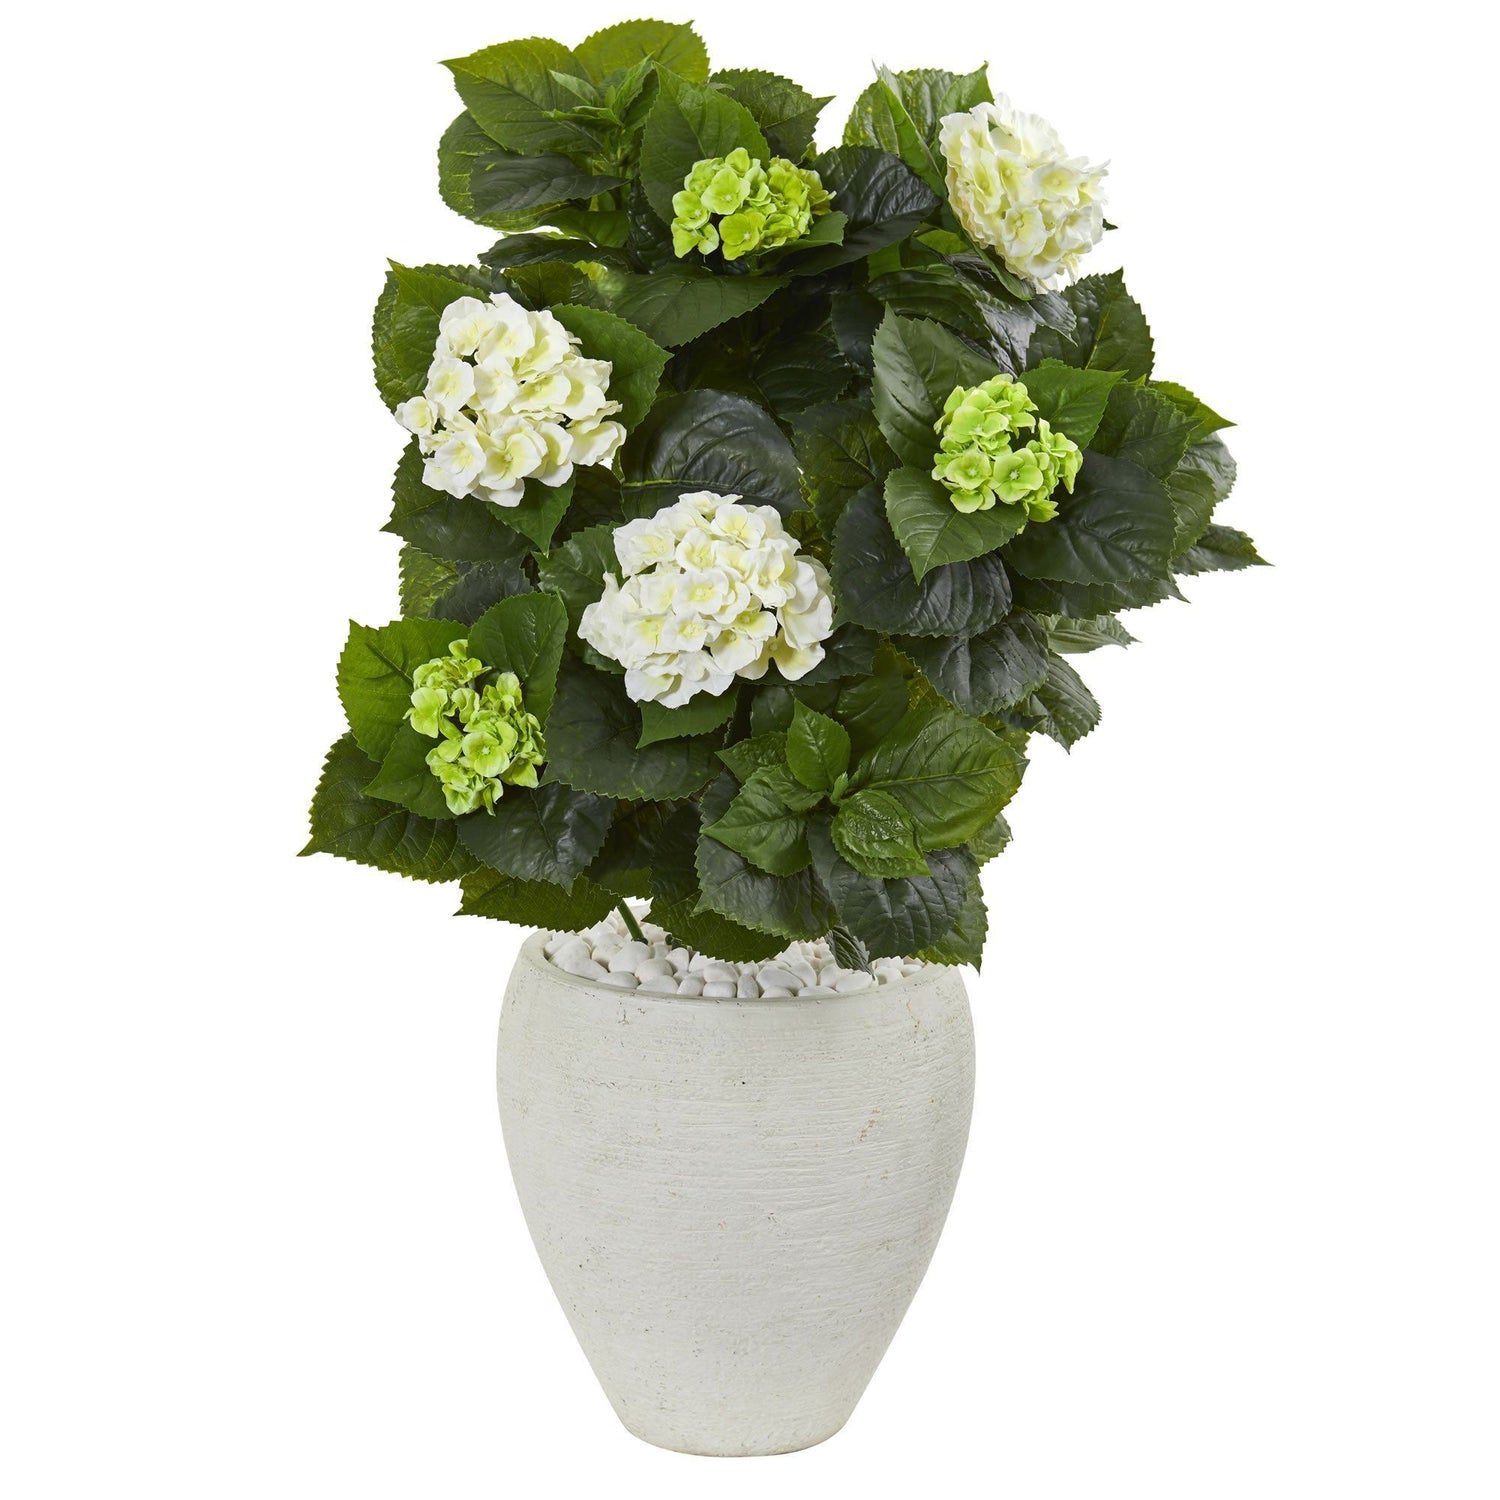 33” Hydrangea Artificial Plant in White Planter